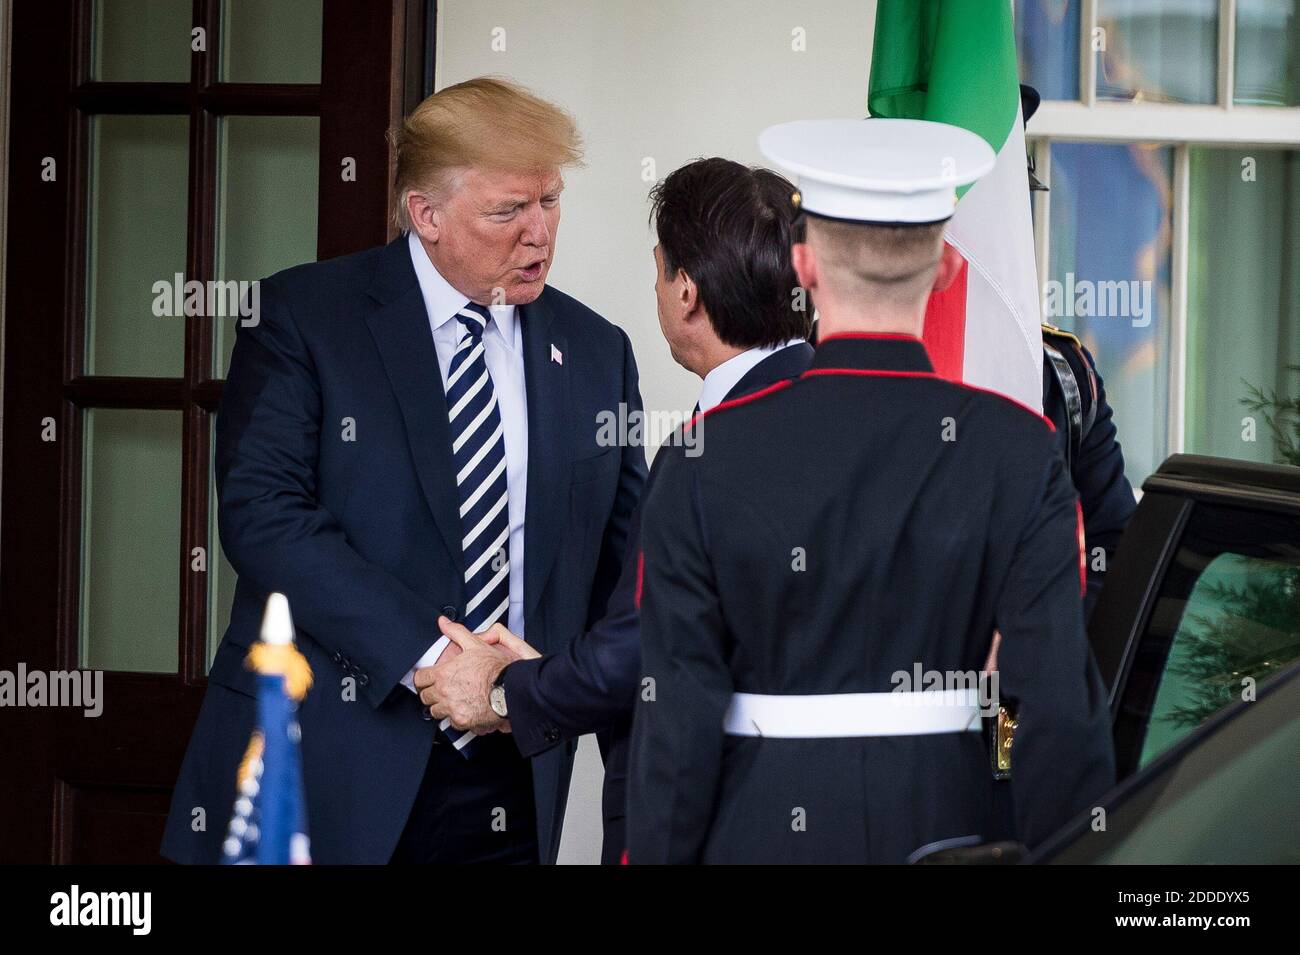 Il presidente DEGLI STATI UNITI Donald Trump saluta il primo ministro italiano Giuseppe Conte alla Casa Bianca il 30 luglio 2018 a Washington, D.C. Foto di Pete Marovich/ABACAUSA.com Foto Stock